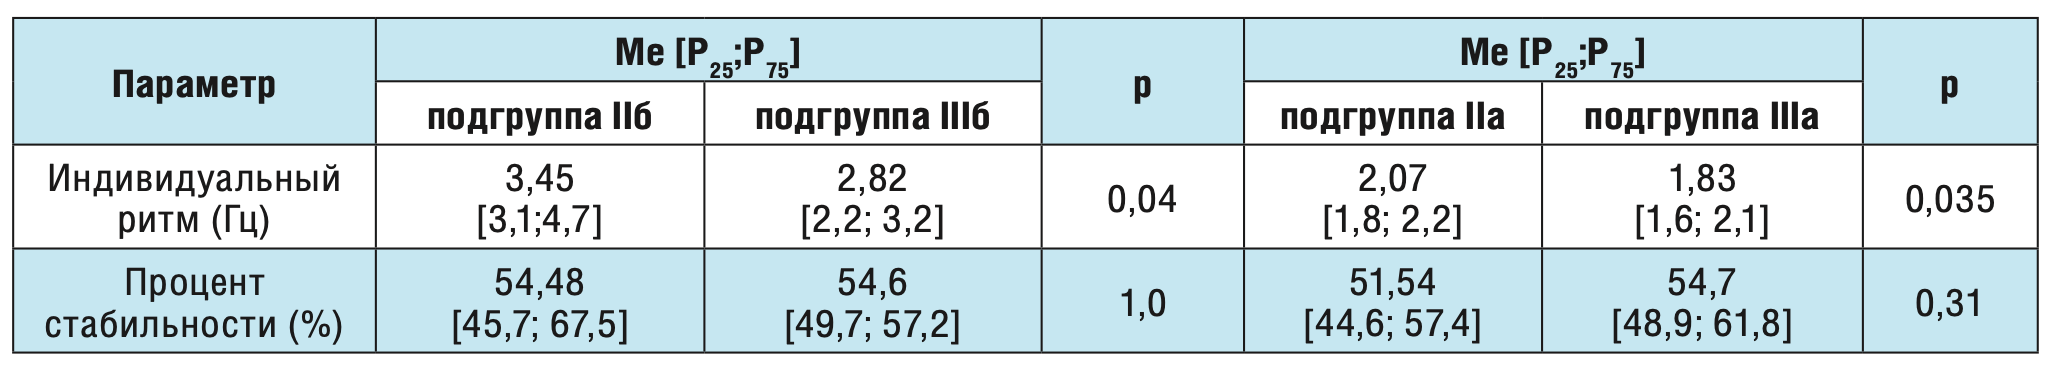 Таблица 3. Сравнительный анализ параметров кистевого теппинга в зависимости от локализации фокуса эпилептиформной активности у пациентов с постинсультной эпилепсией.